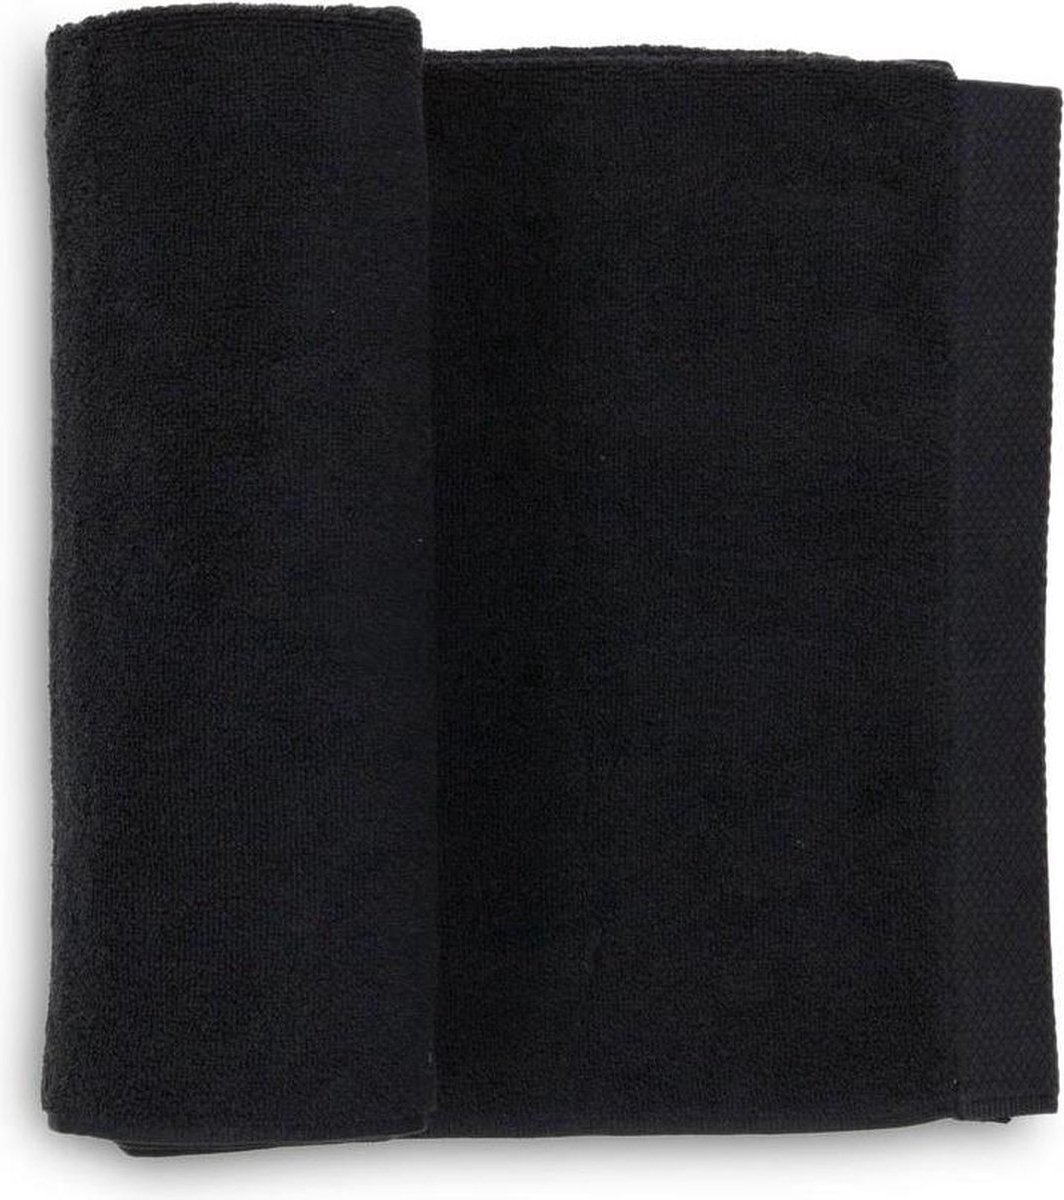 Heckett & Lane 2-pack katoen handdoeken zwart - 70x140 - luxe uitstraling - huidvriendelijk en duurzaam